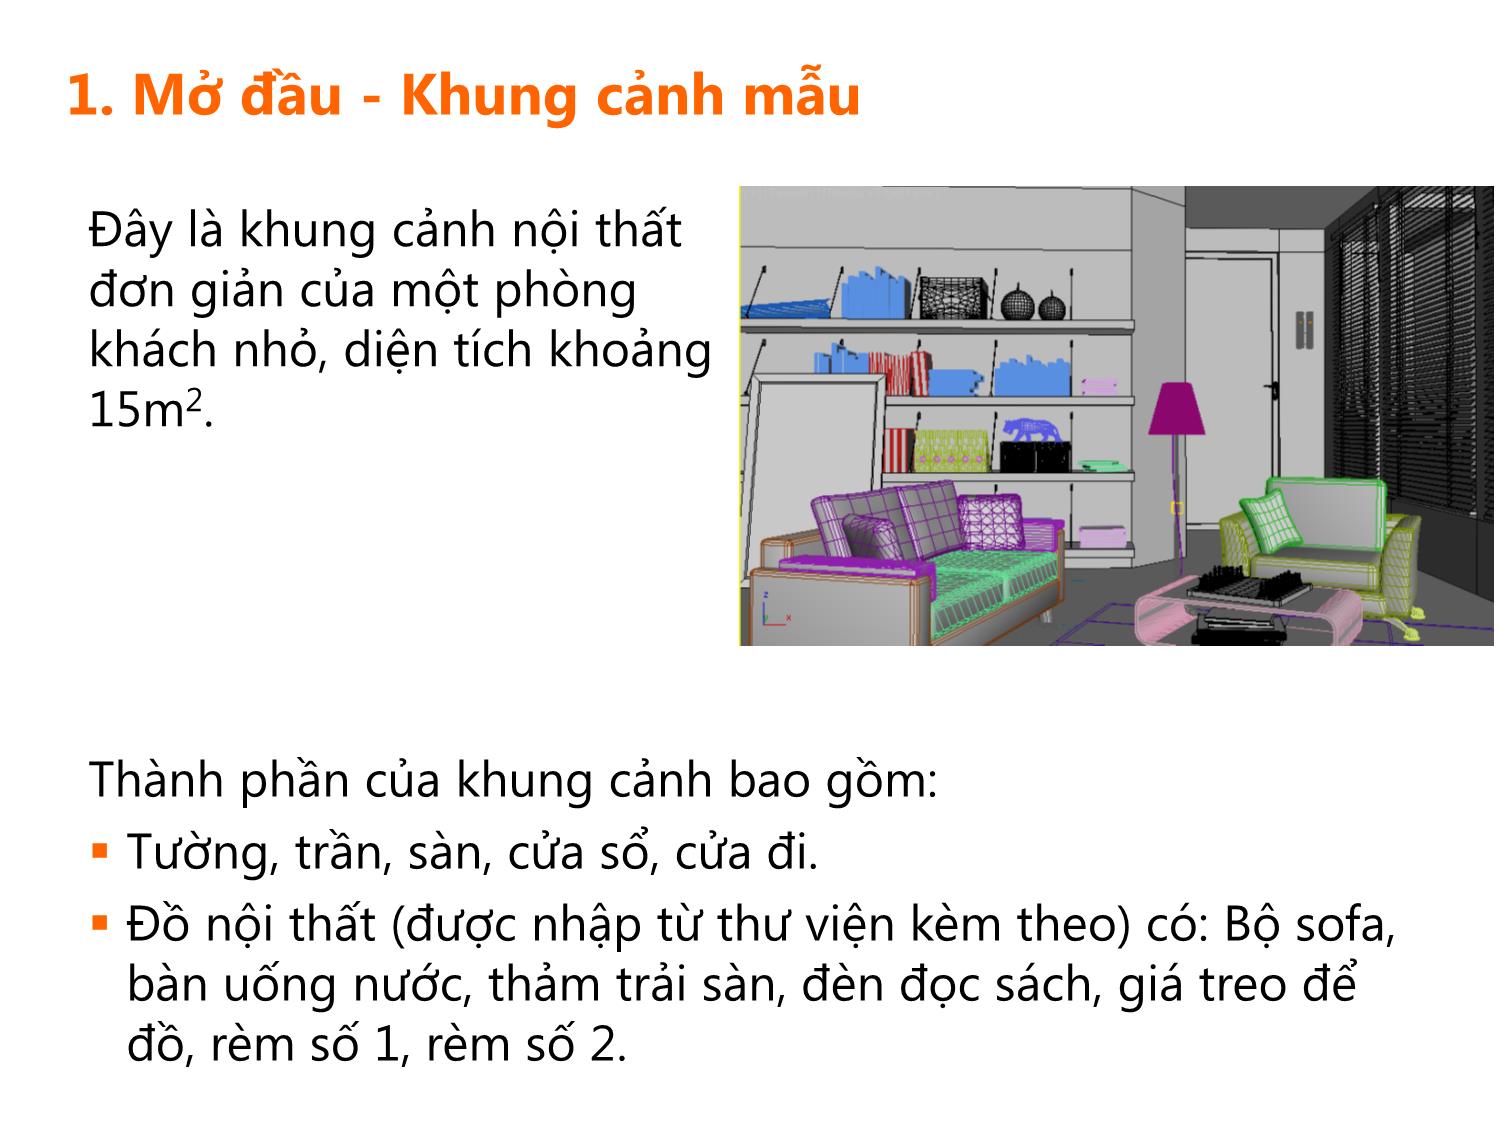 Bài giảng Thiết kế phối cảnh 3D - Bài 1: Dựng mô hình nội thất phòng khách dựa trên bản vẽ mẫu trang 3